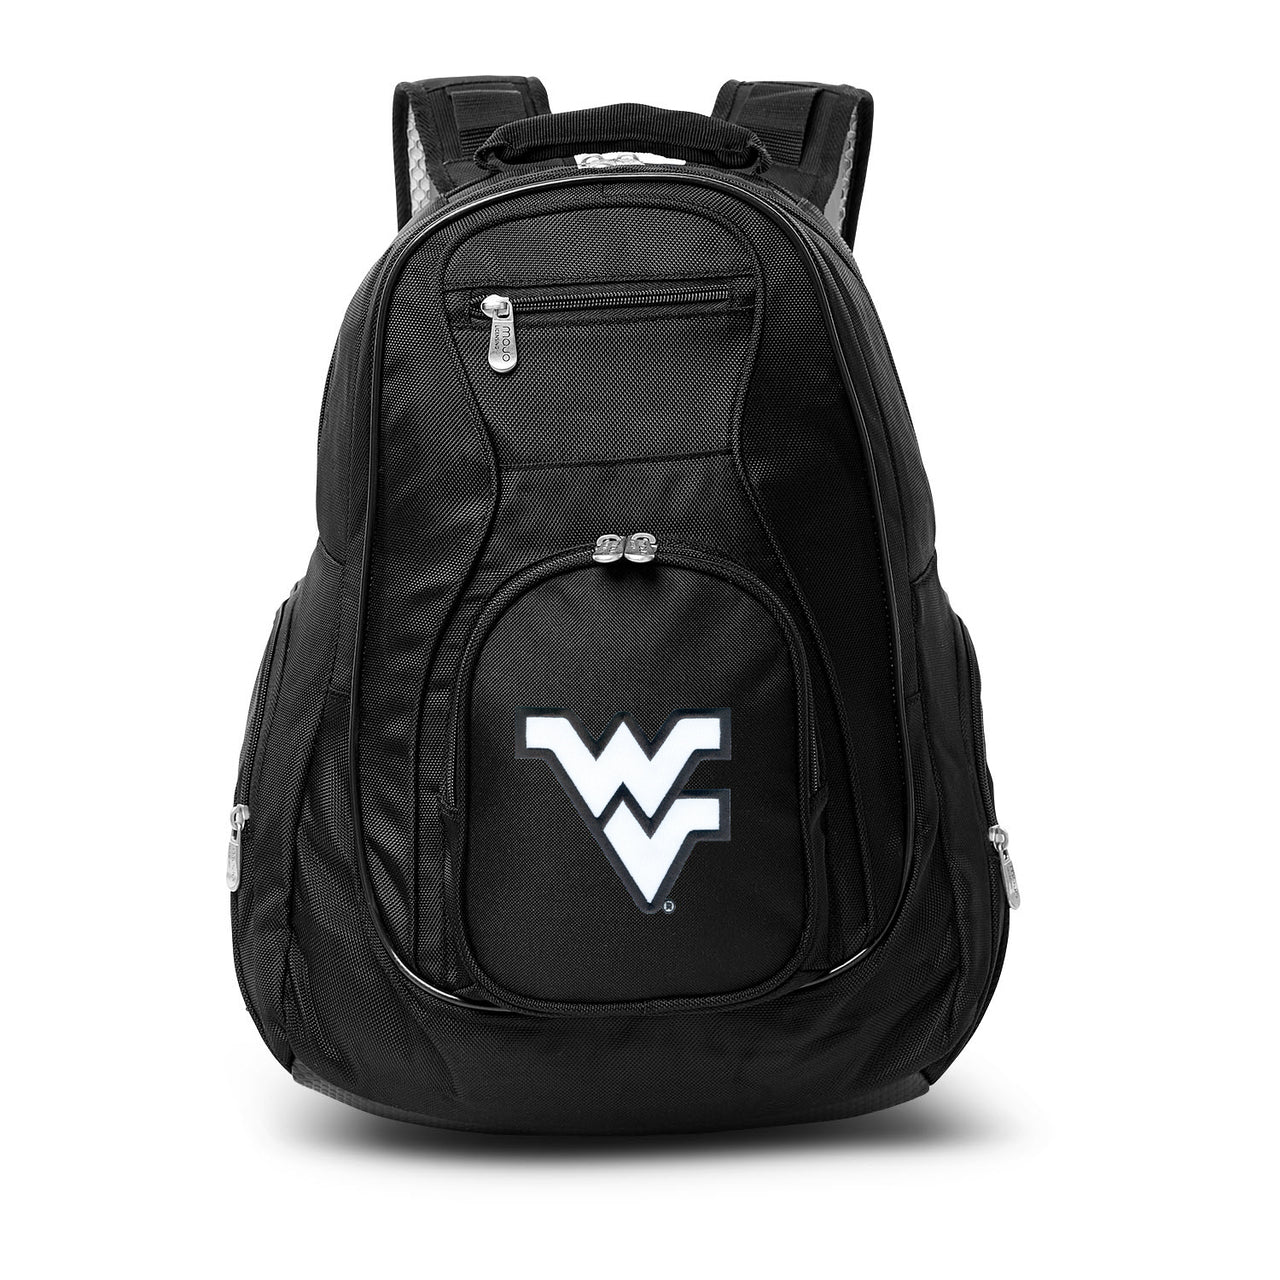 West Virginia Mountaineers Laptop Backpack Black